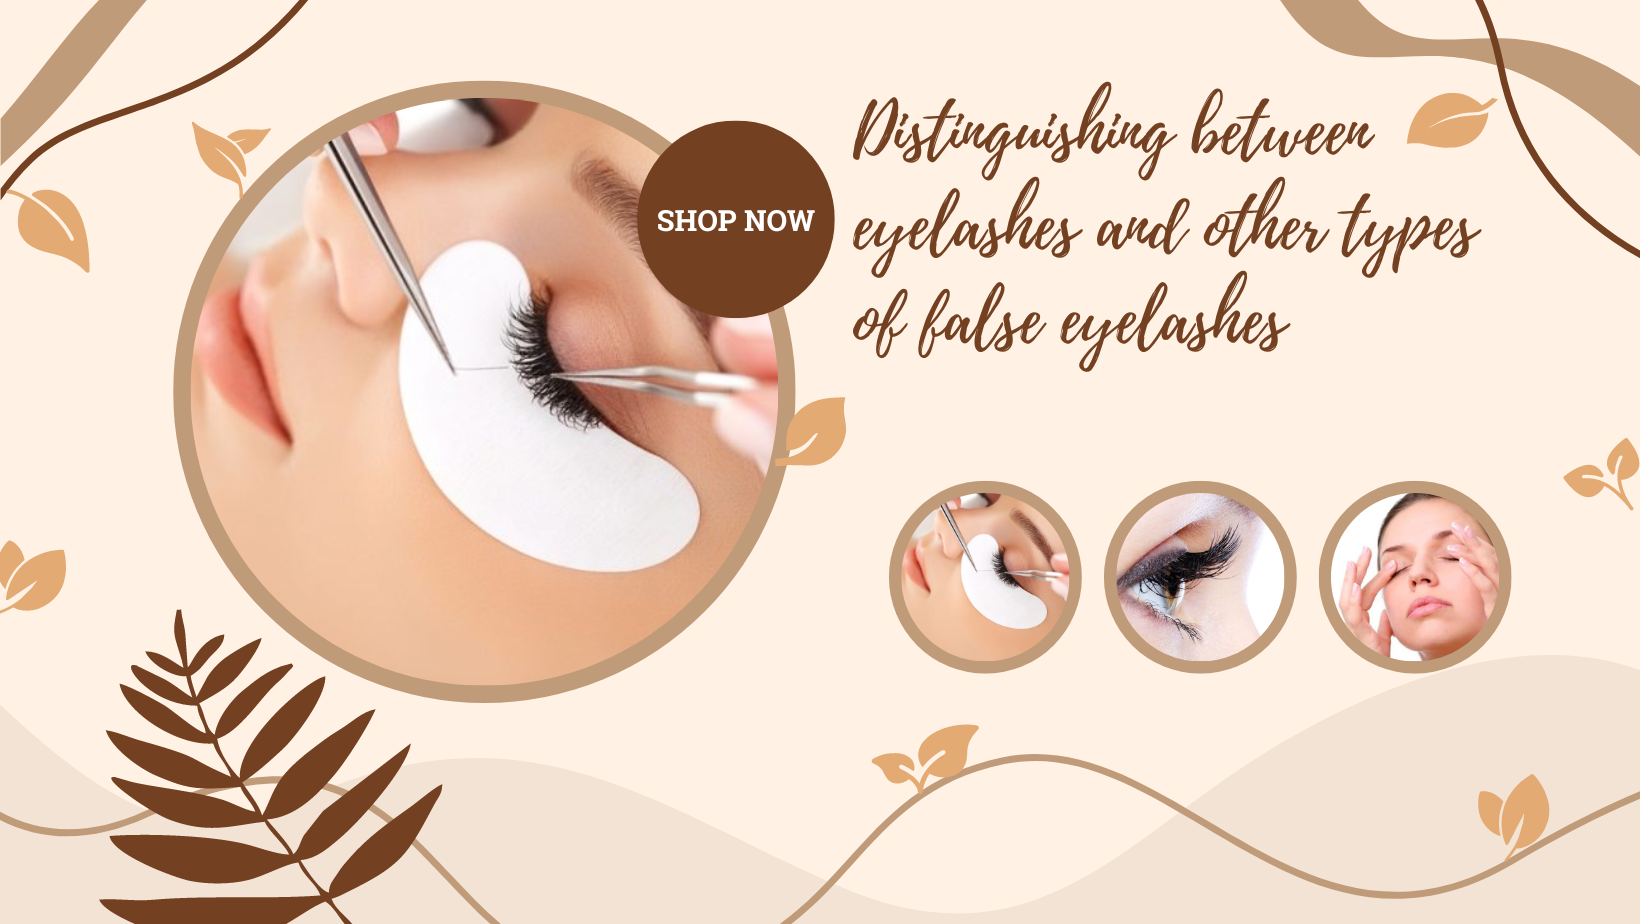 Distinguishing between eyelashes and other types of false eyelashes